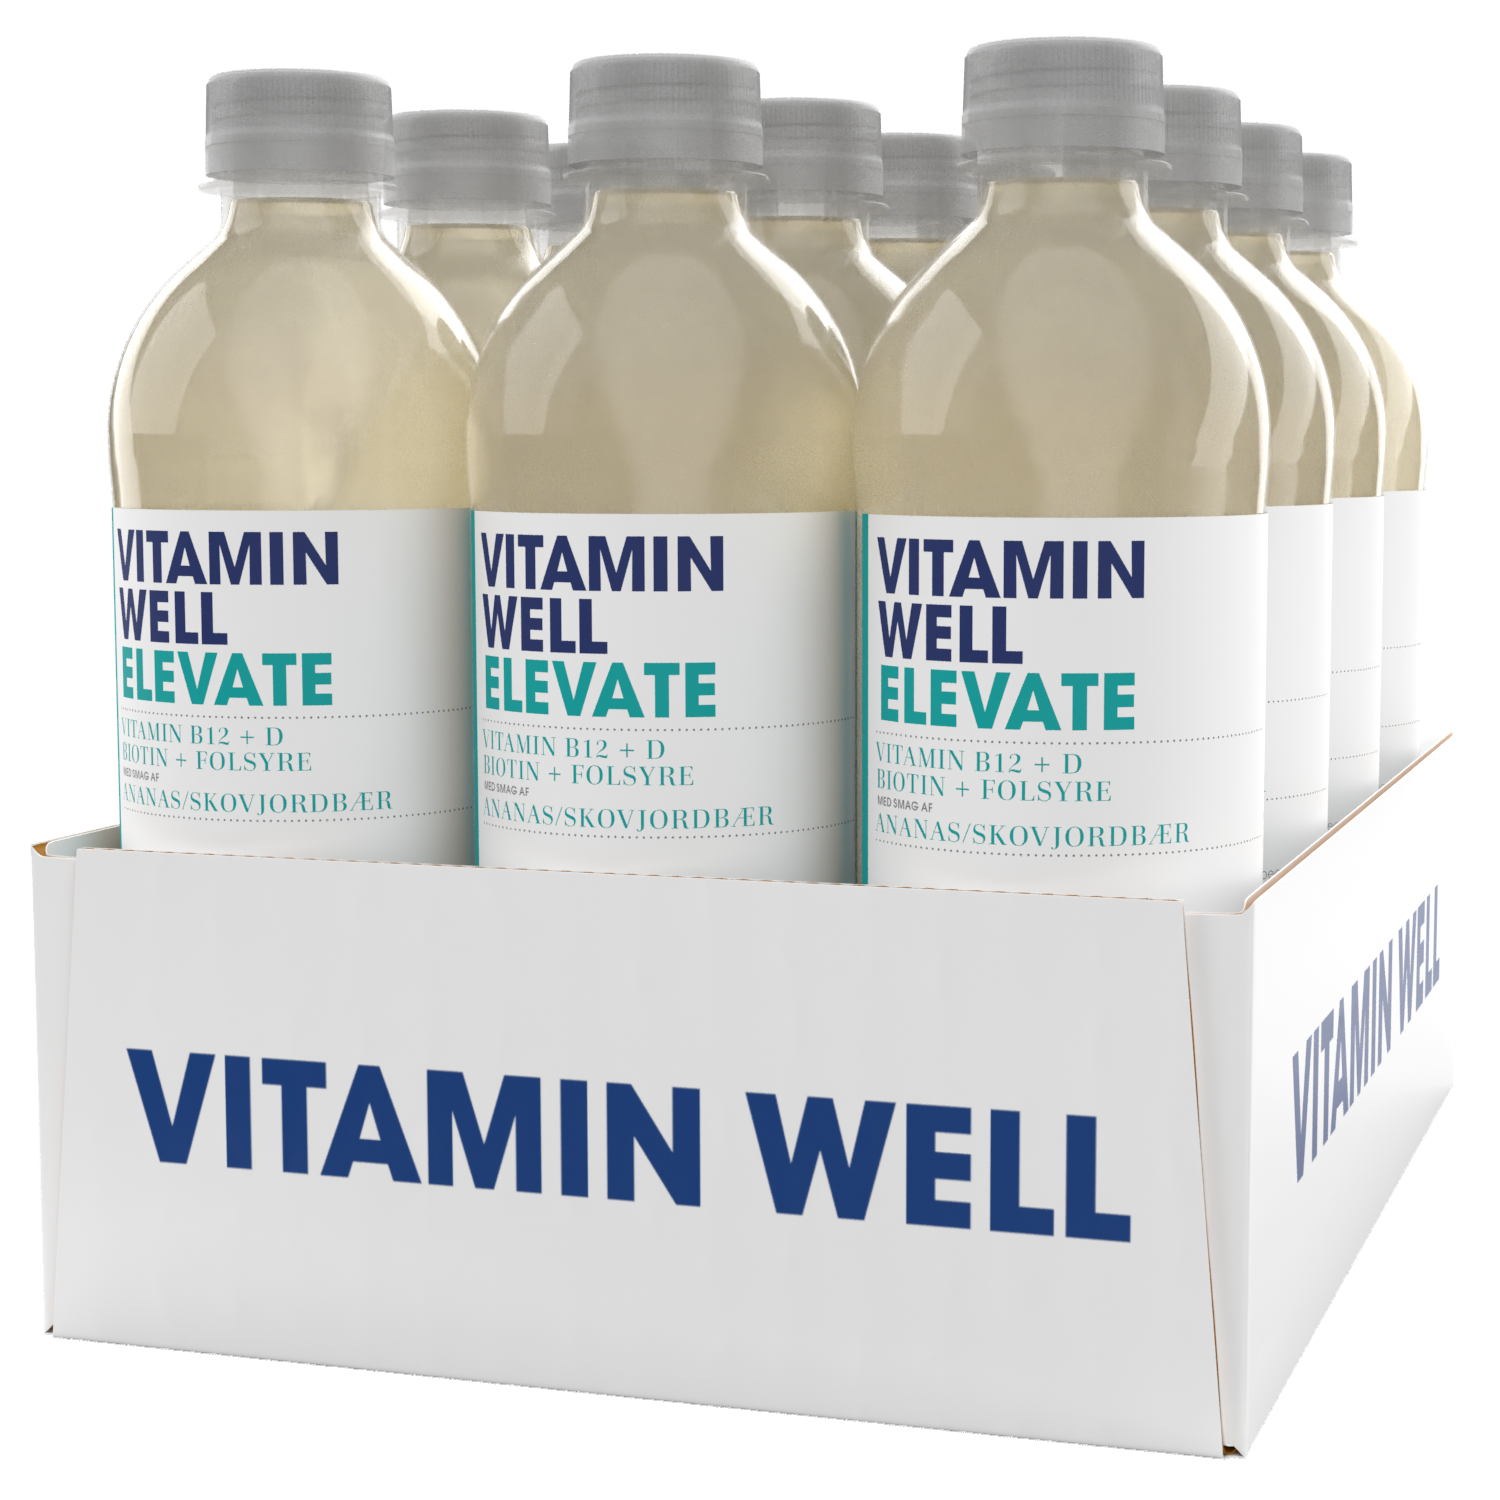 Brug Vitamin Well Elevate (12x 500ml) til en forbedret oplevelse